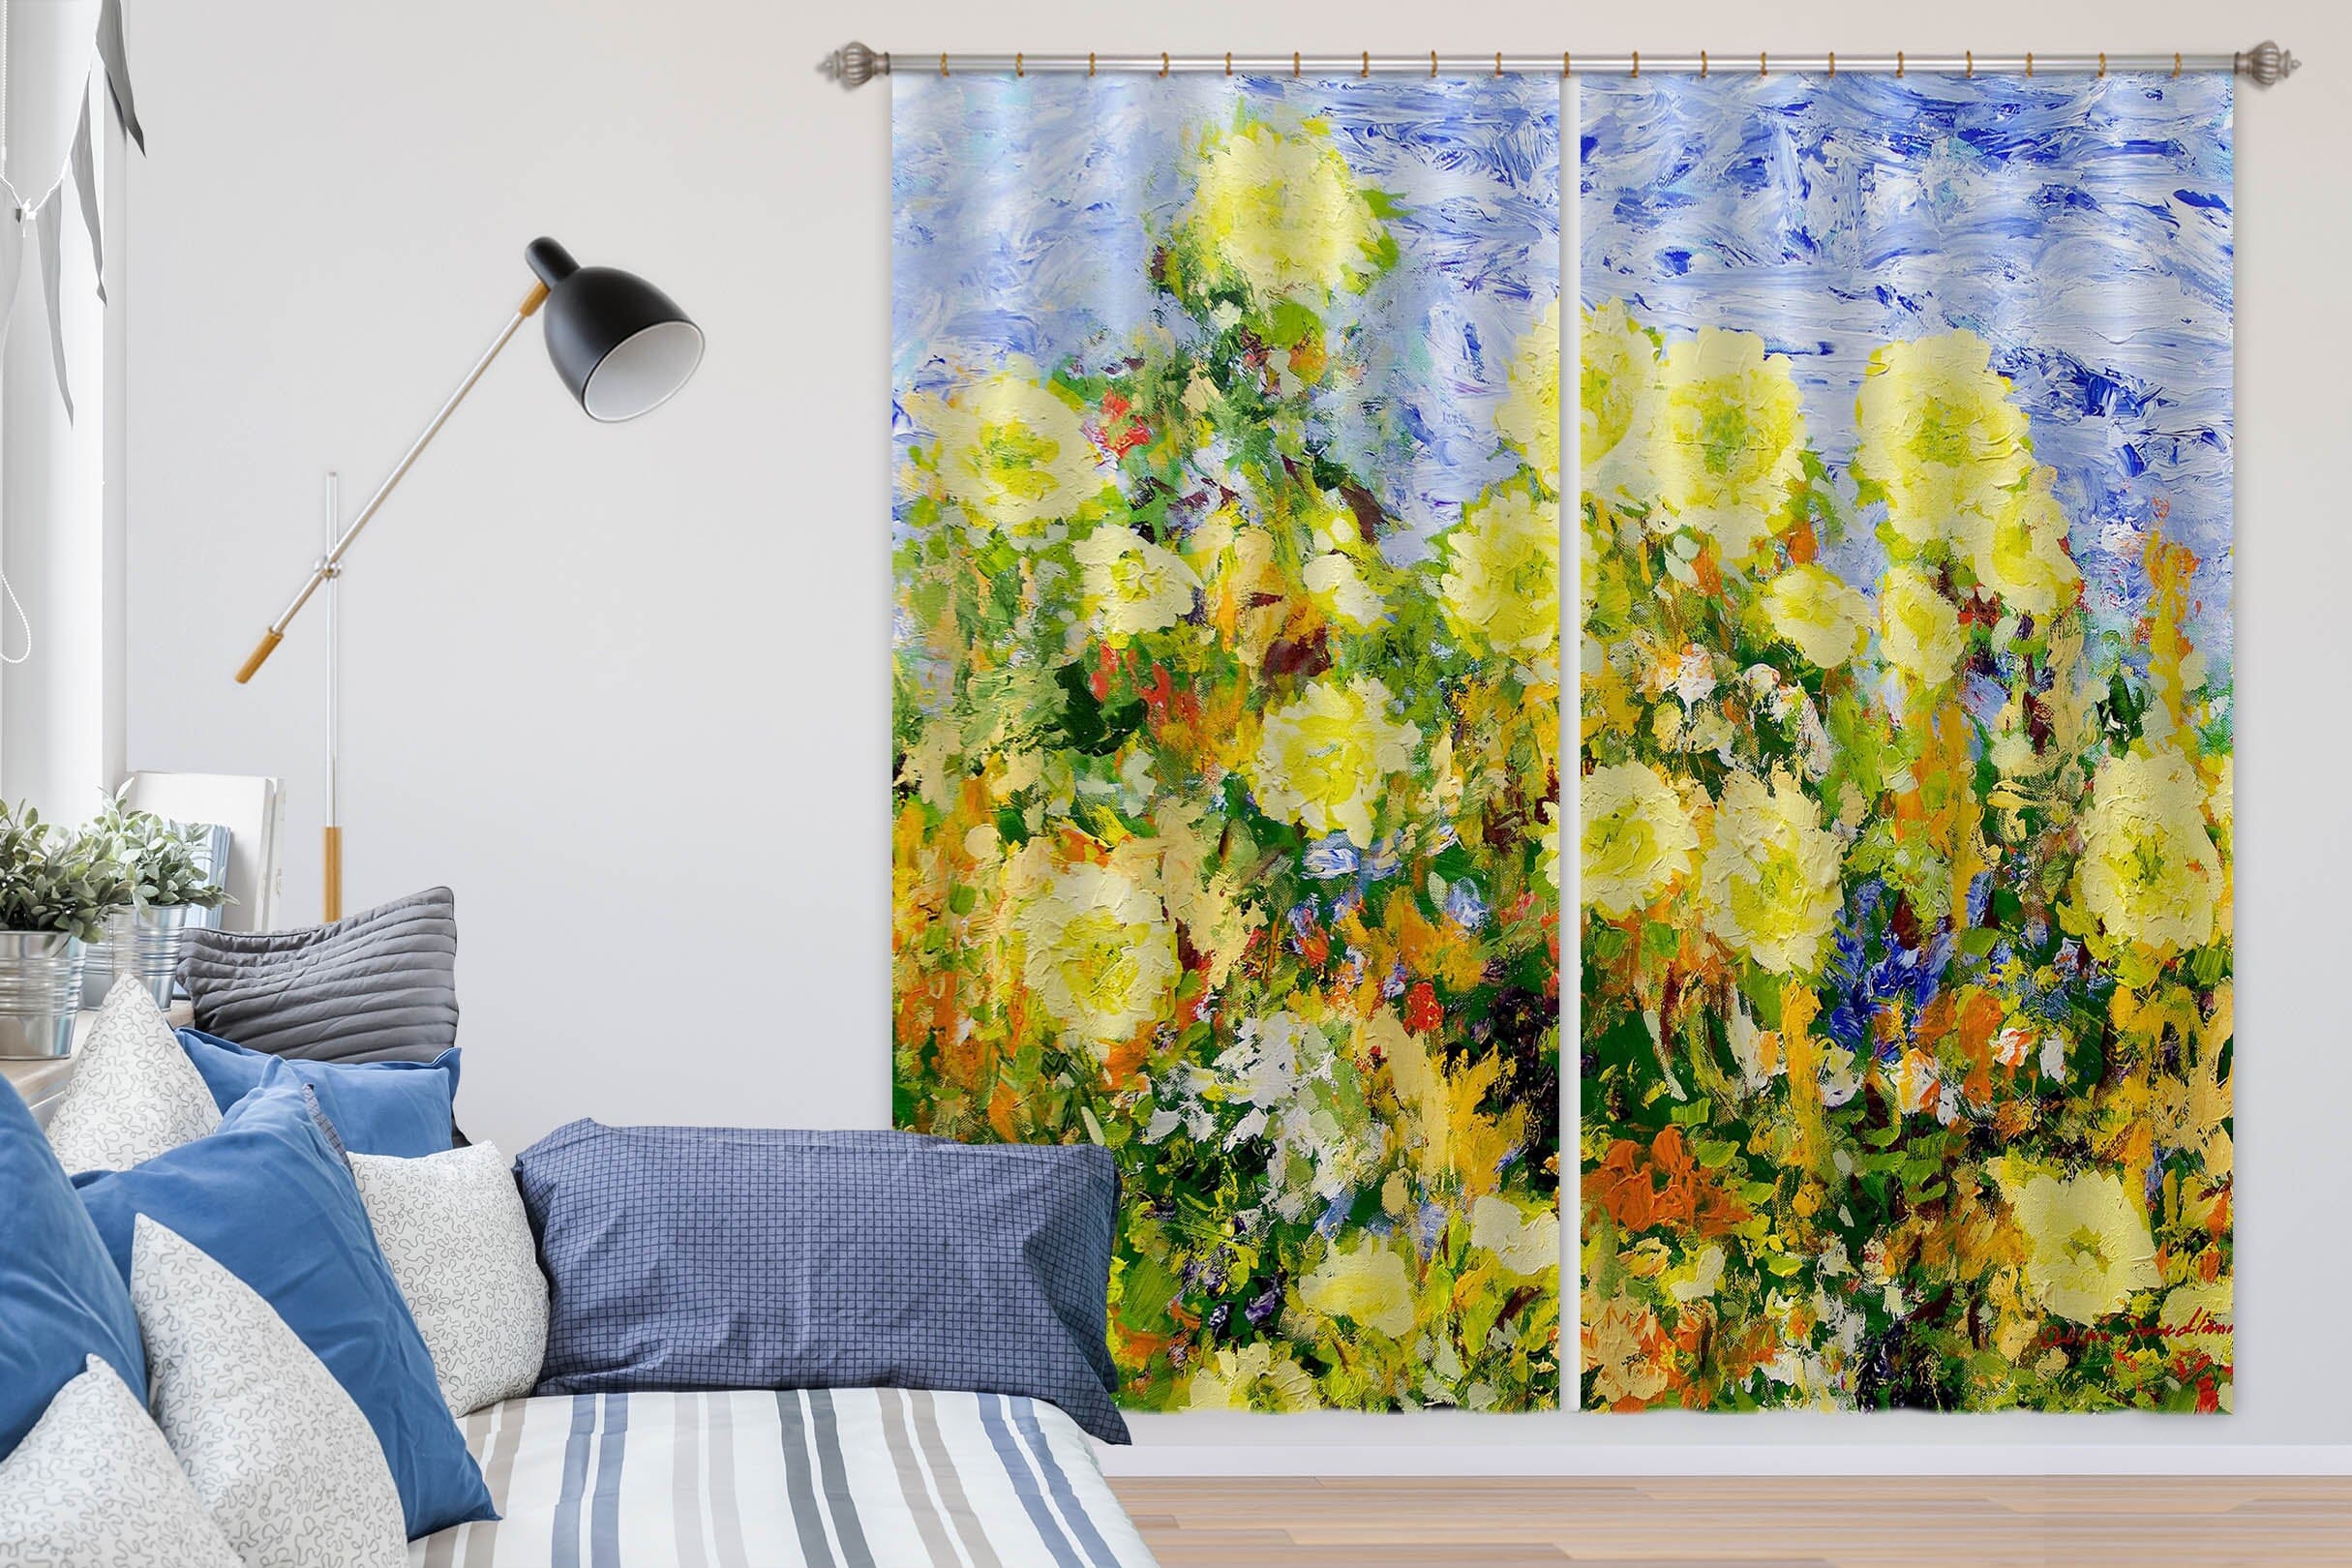 3D Yellow Flowers 264 Allan P. Friedlander Curtain Curtains Drapes Curtains AJ Creativity Home 